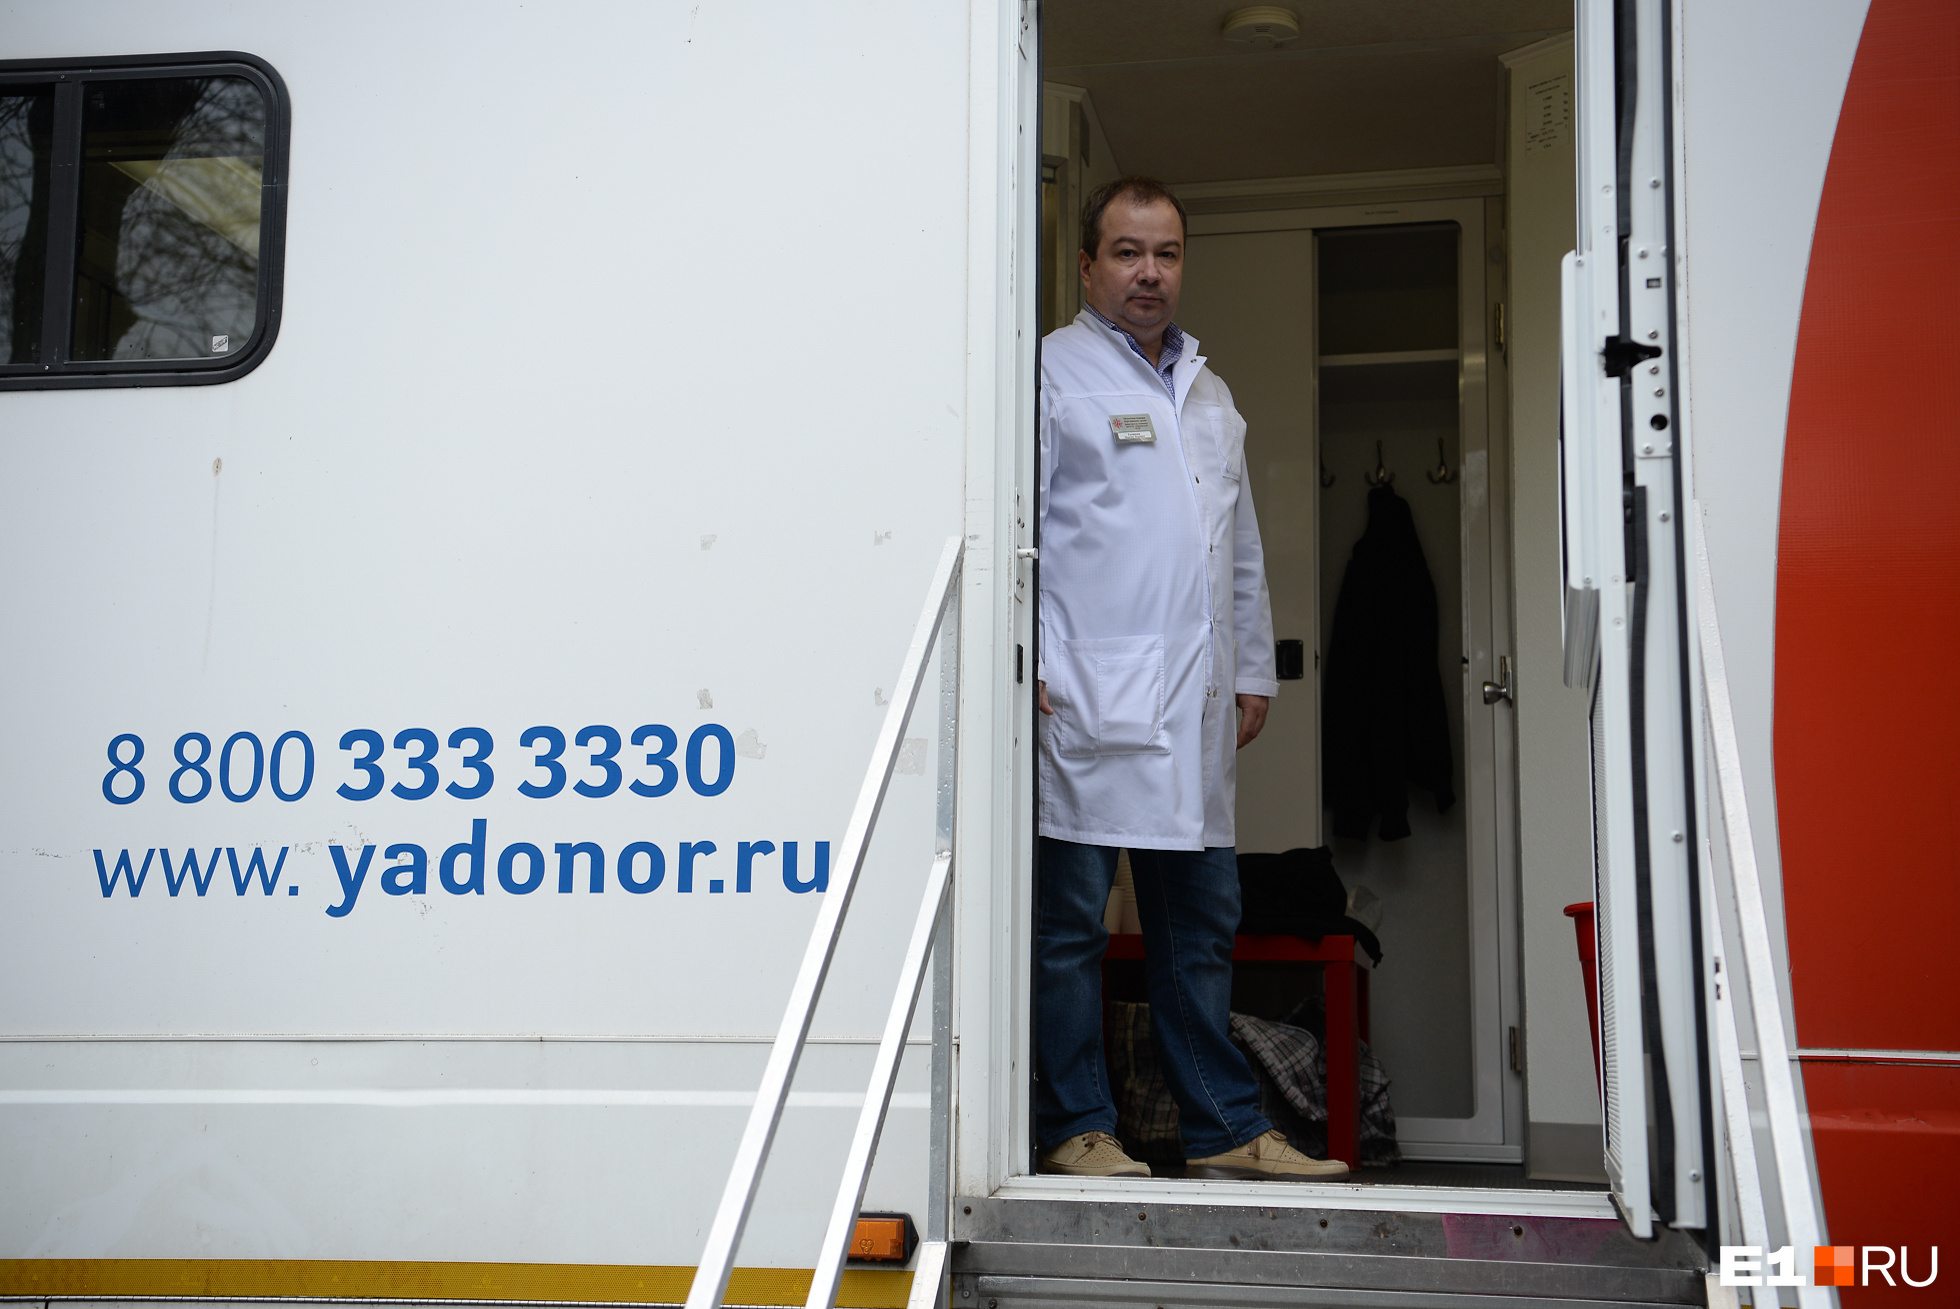 Заместитель главврача Областной станции переливания крови Максим Галимов